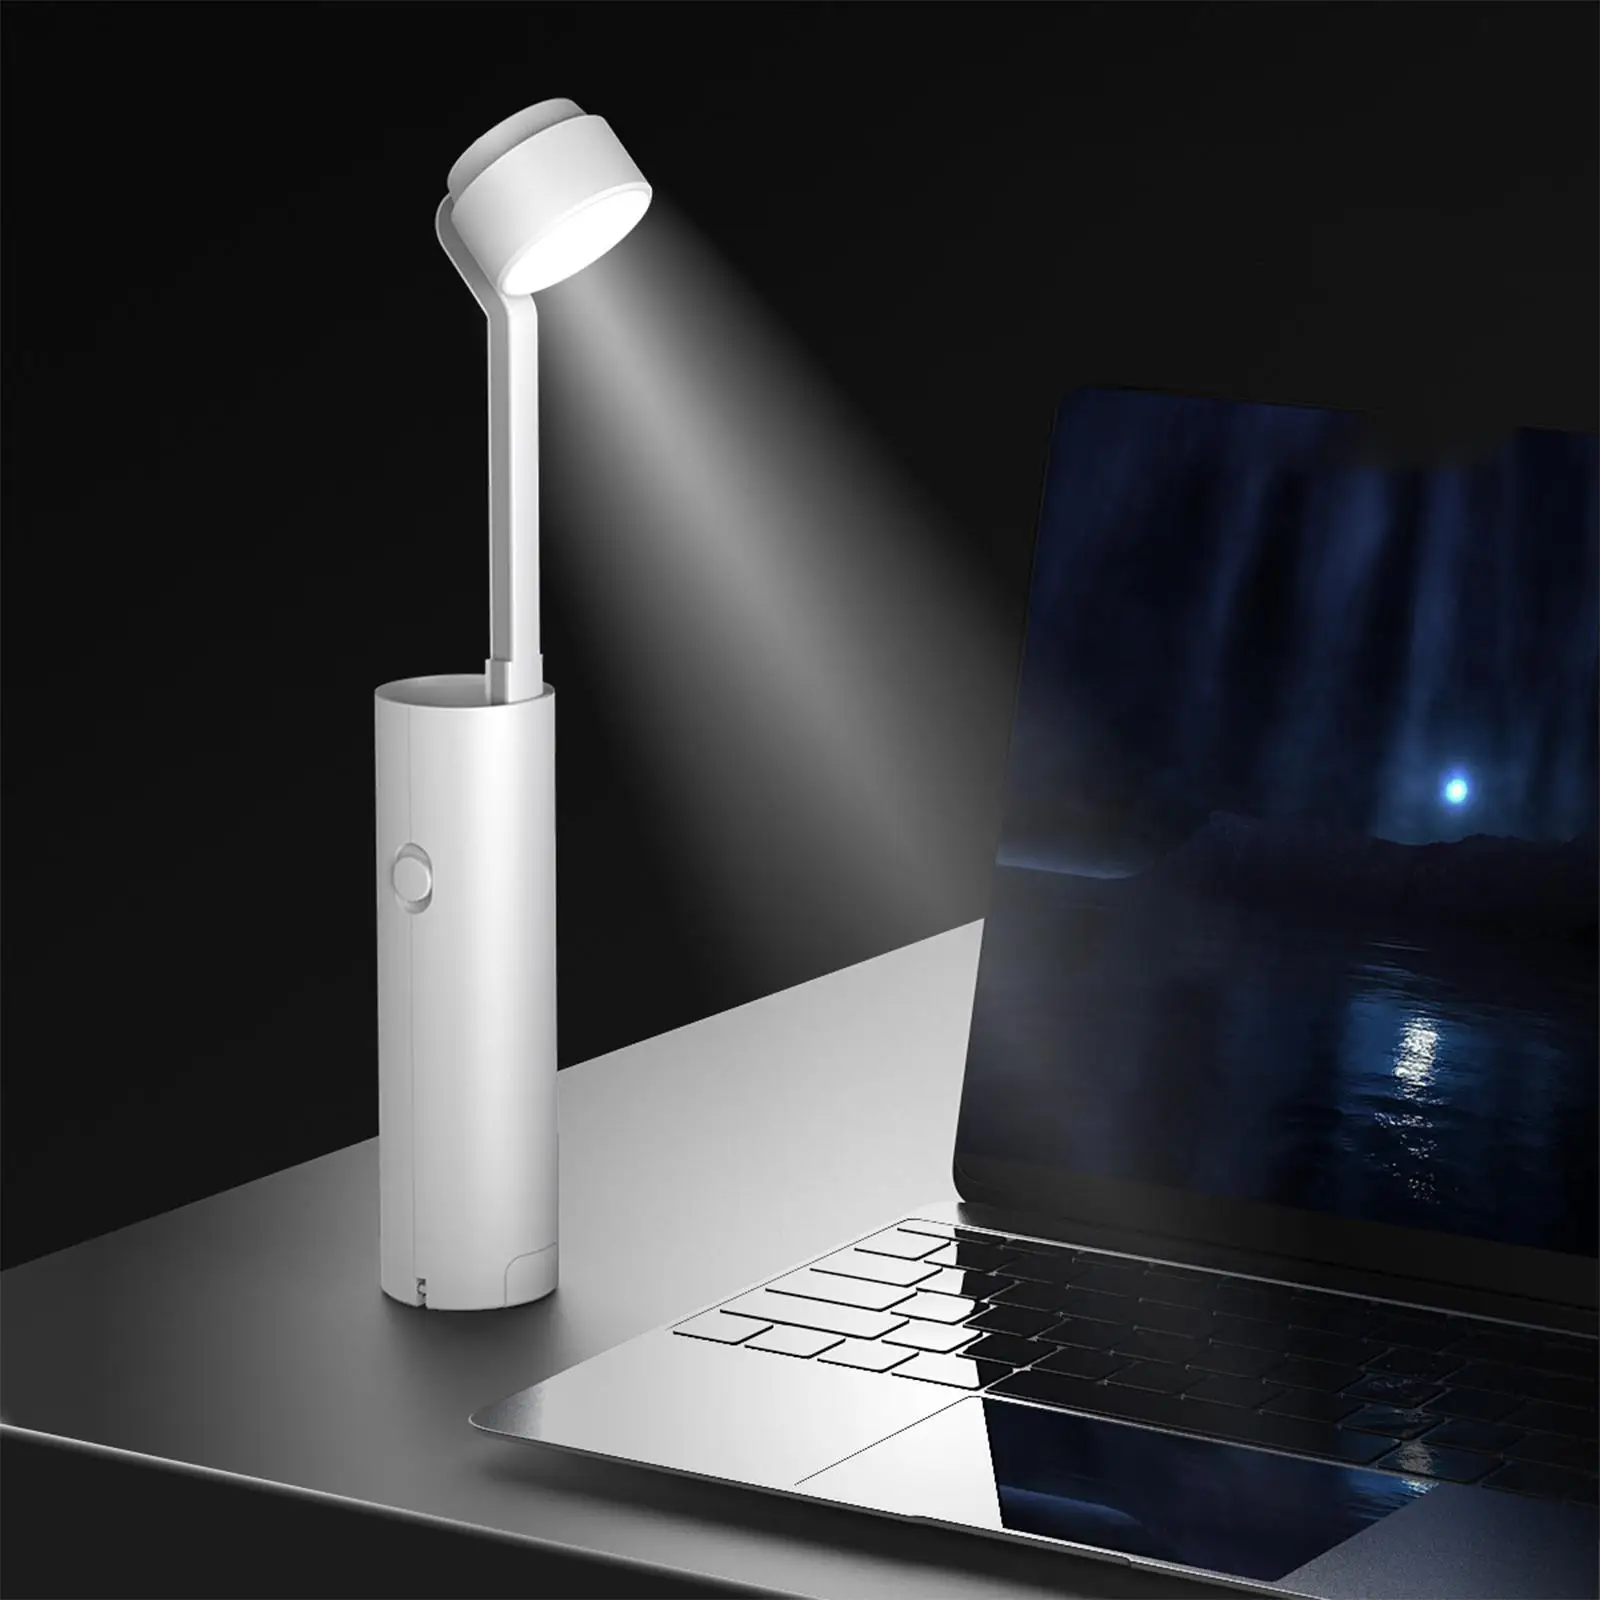 Dimmable LED Desk Lamp Table Light Eye Caring for Dorm Study Living Room